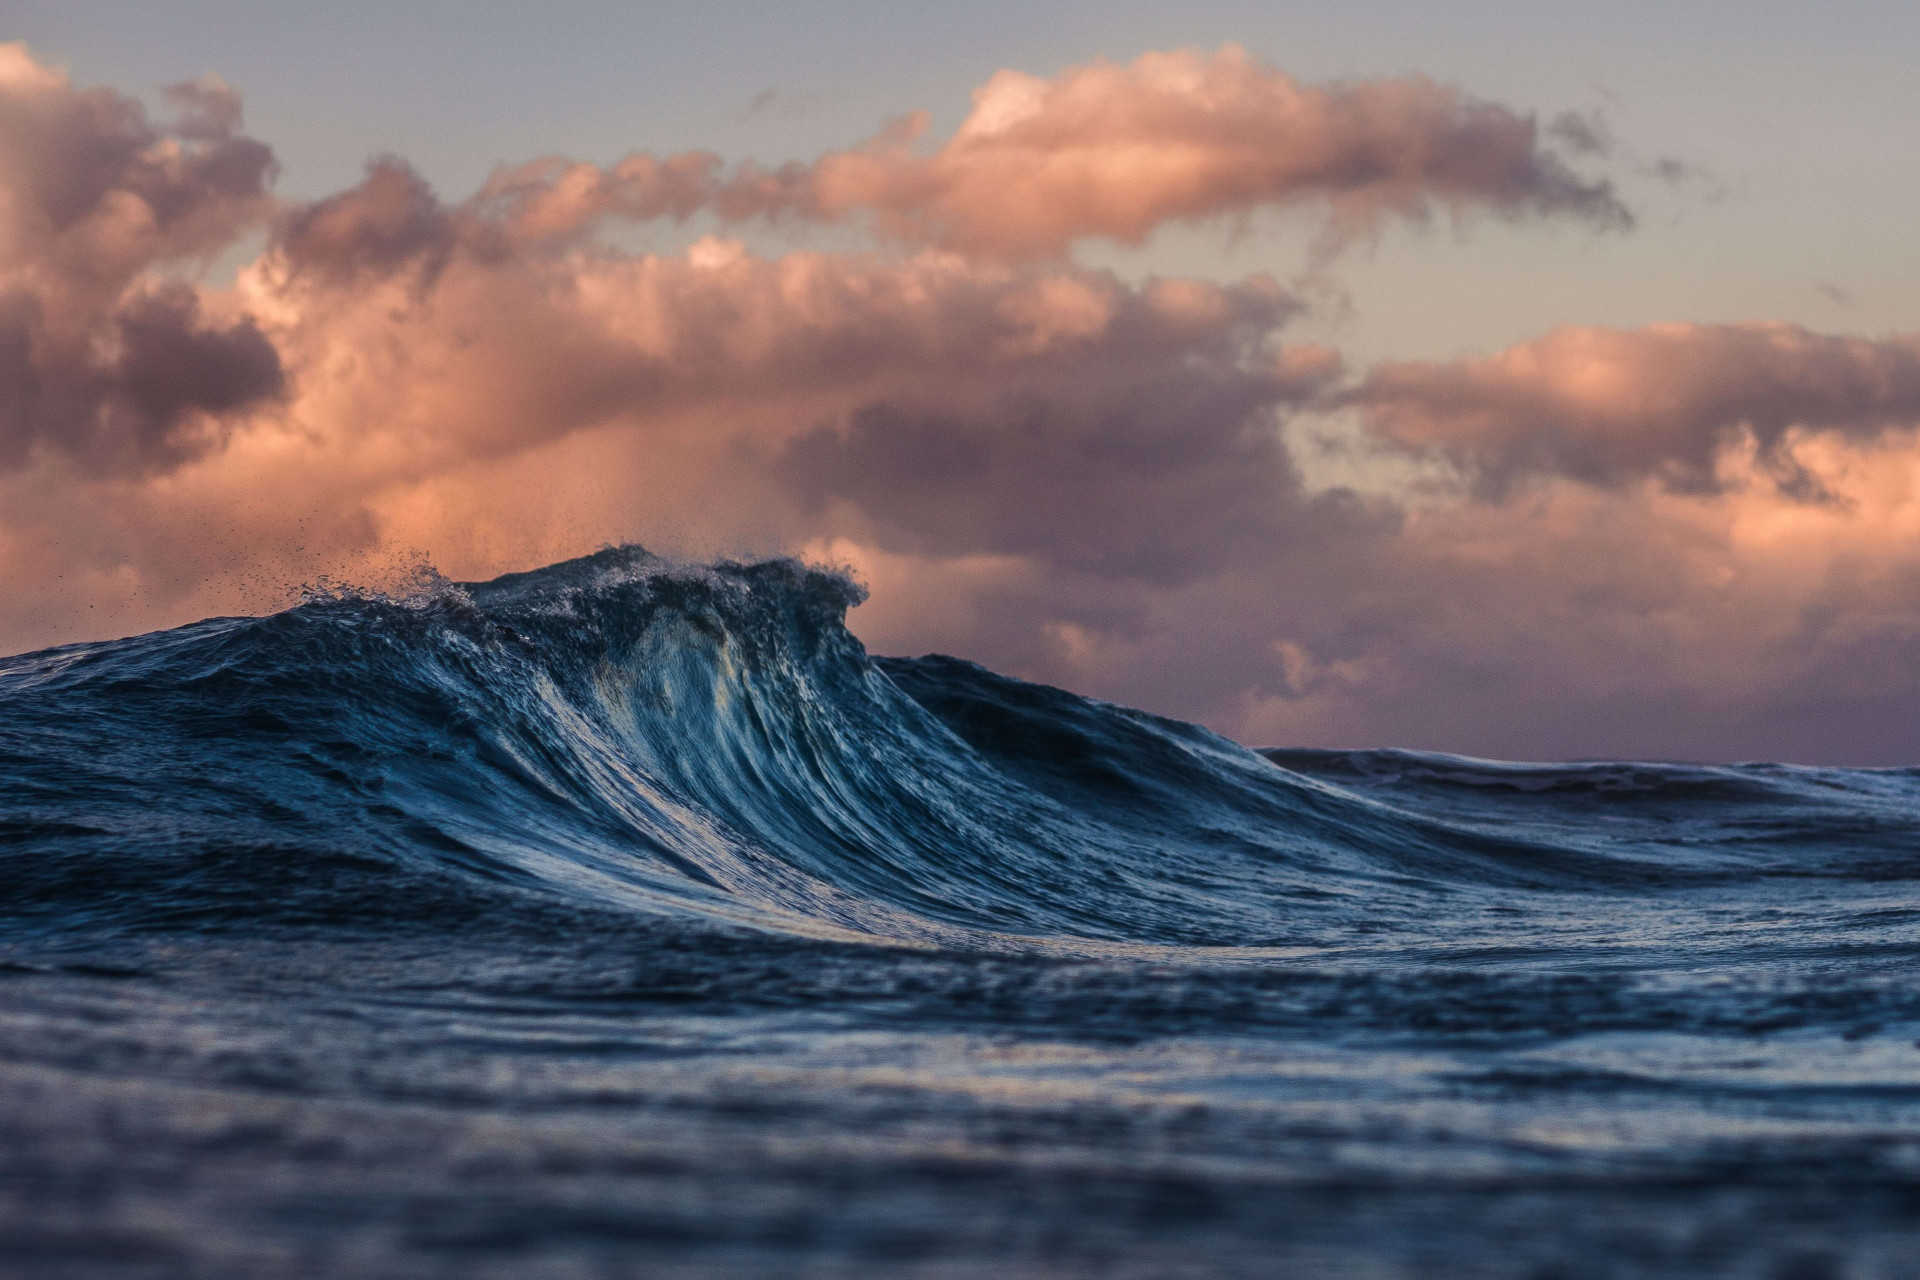 Sonhar com onda gigante pode ser um ALERTA para prestar muita atenção (Imagens: Unsplash)